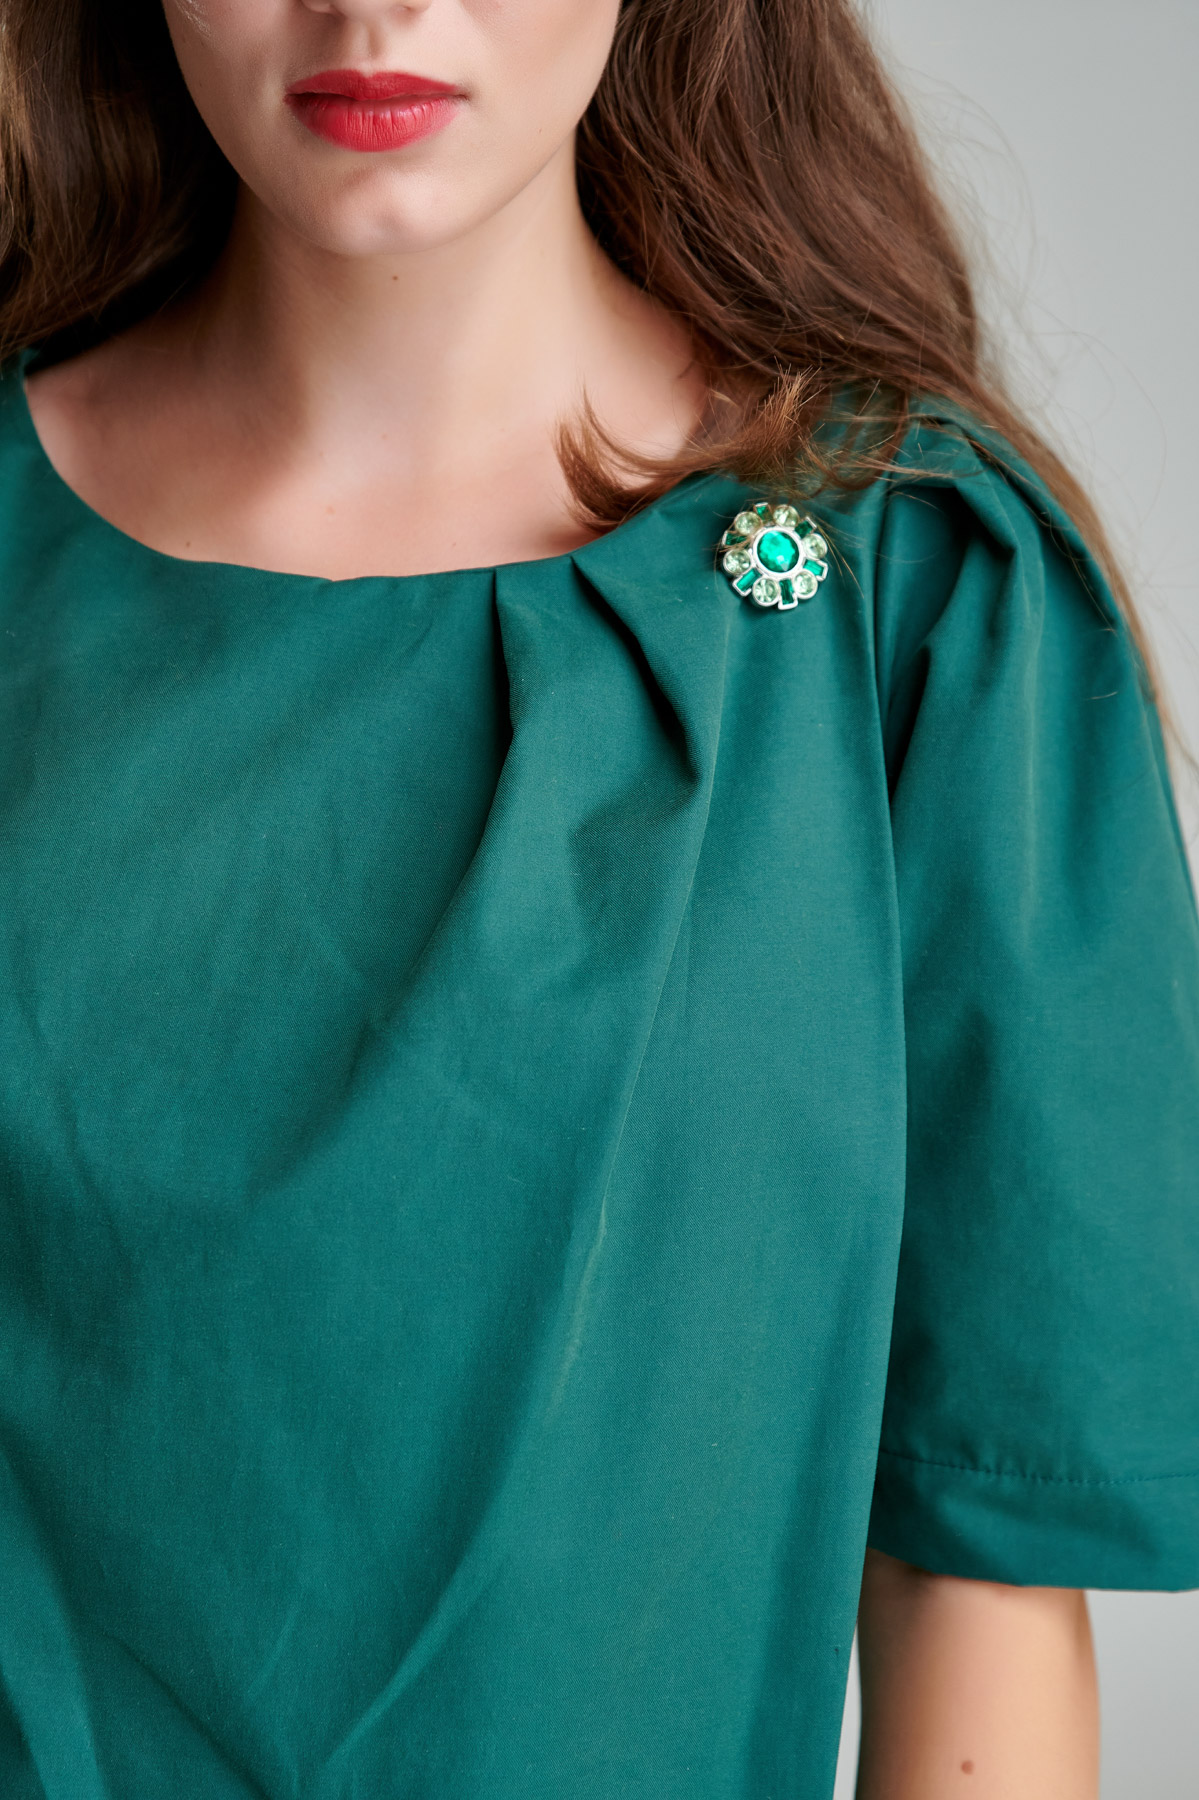 Rochie OLIVIER verde smarald. Materiale naturale, design unicat, cu broderie si aplicatii handmade